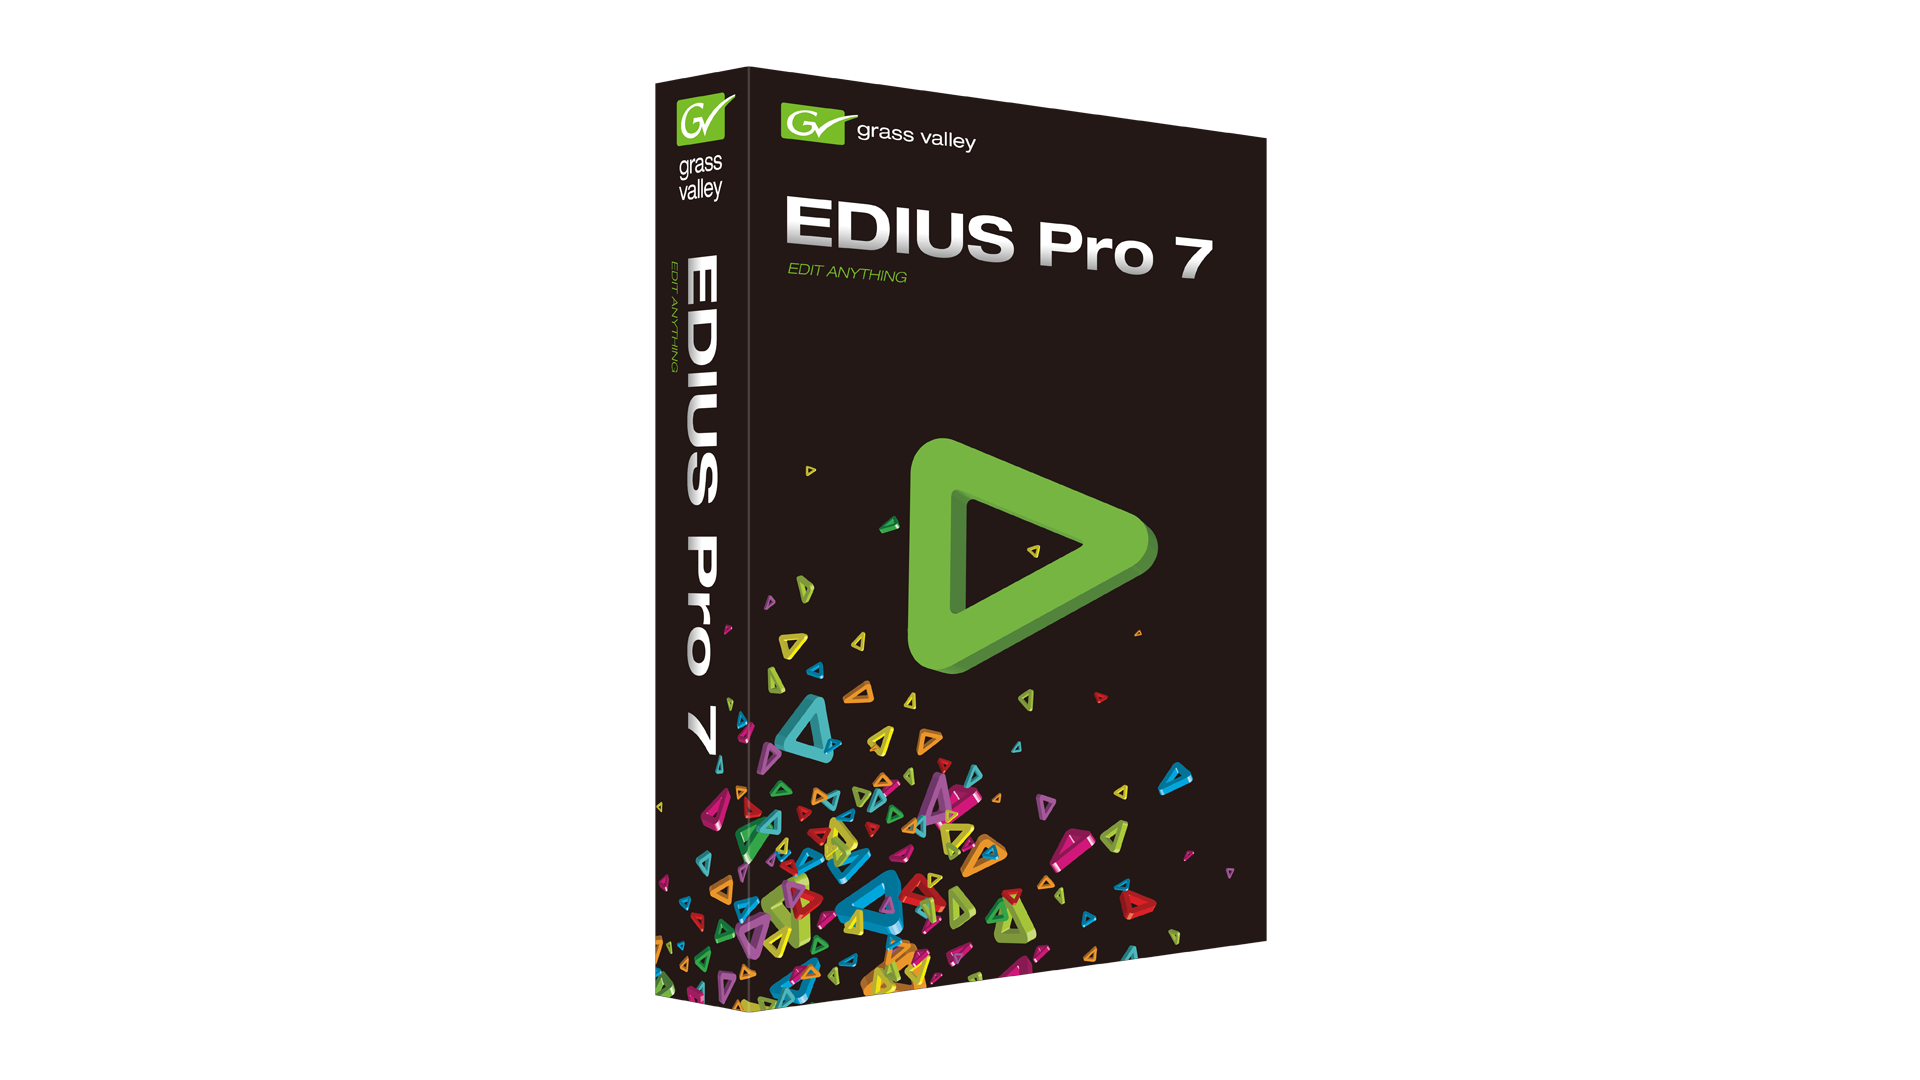 20130530-EDIUS_Pro_7_box_three_quarter_1920x1080.png